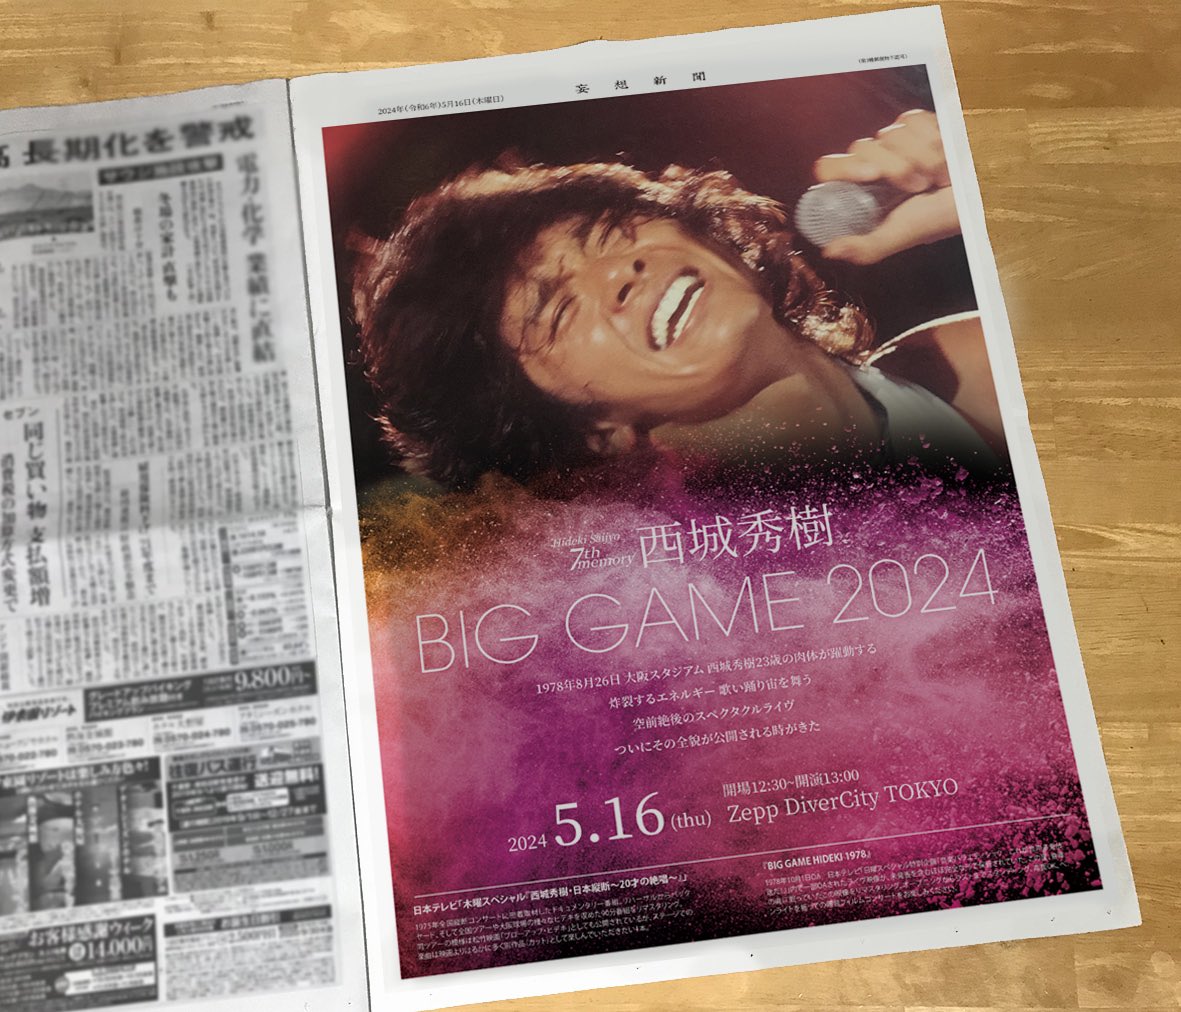 ついに東京秀樹週間がはじまりましたねー！たくさんの方が16日に東京に！楽しみですね！新聞広告です。

あったらいいなぁ